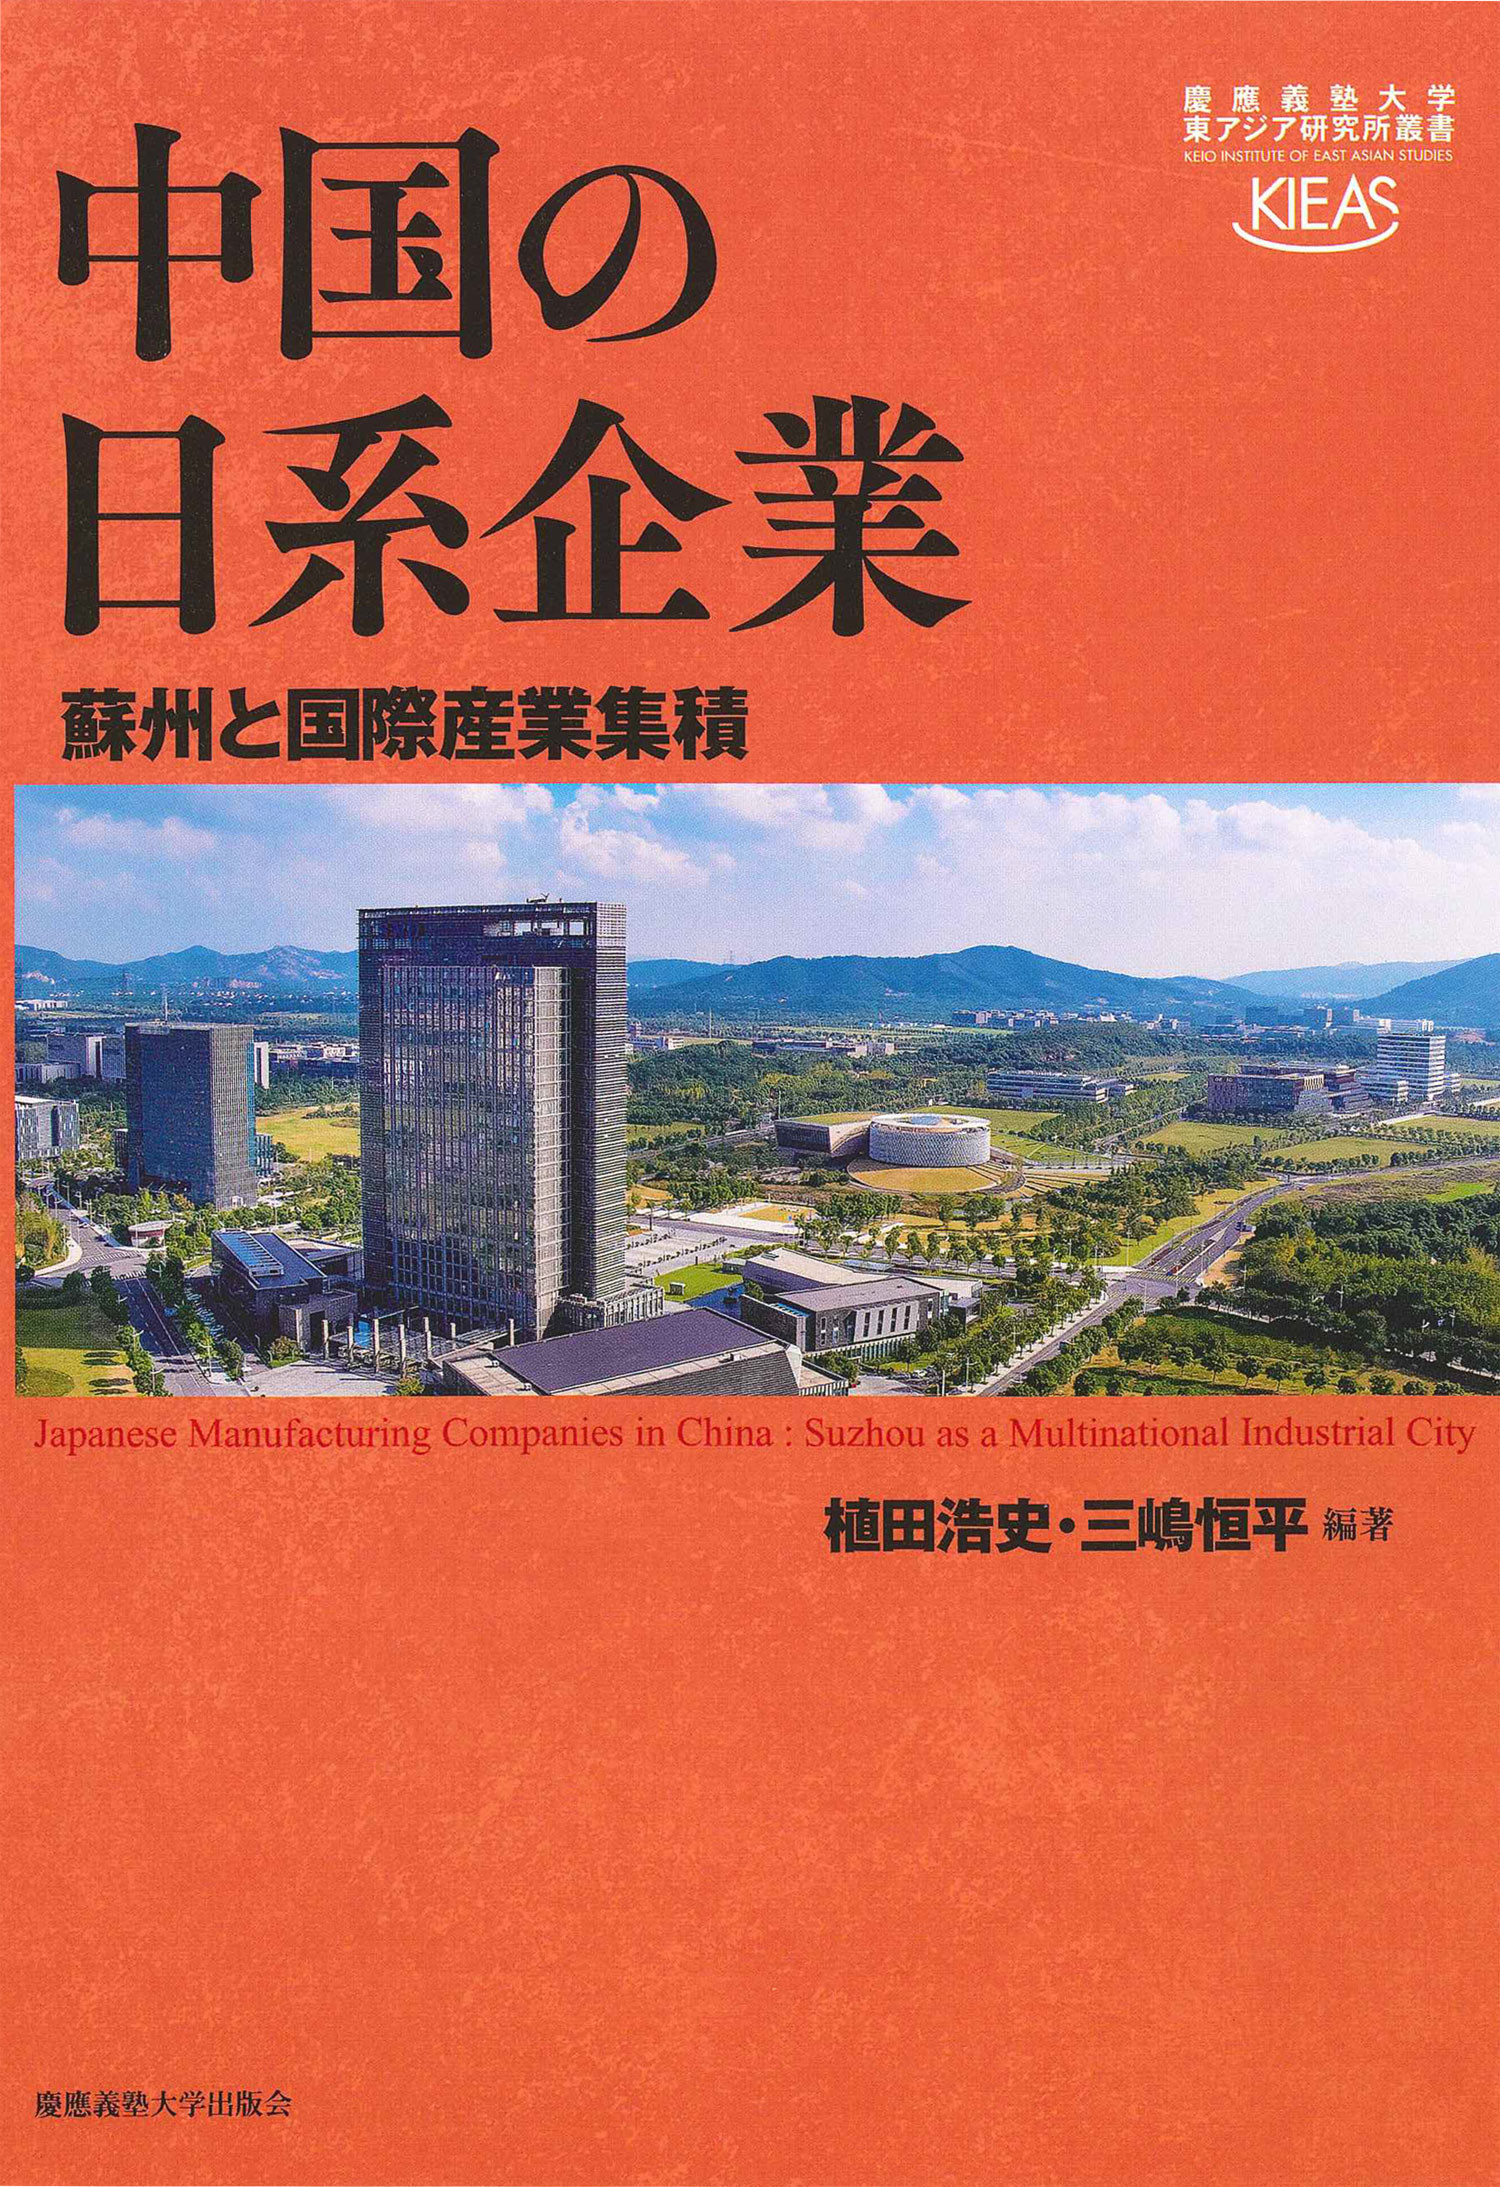 中国の日系企業の商品画像